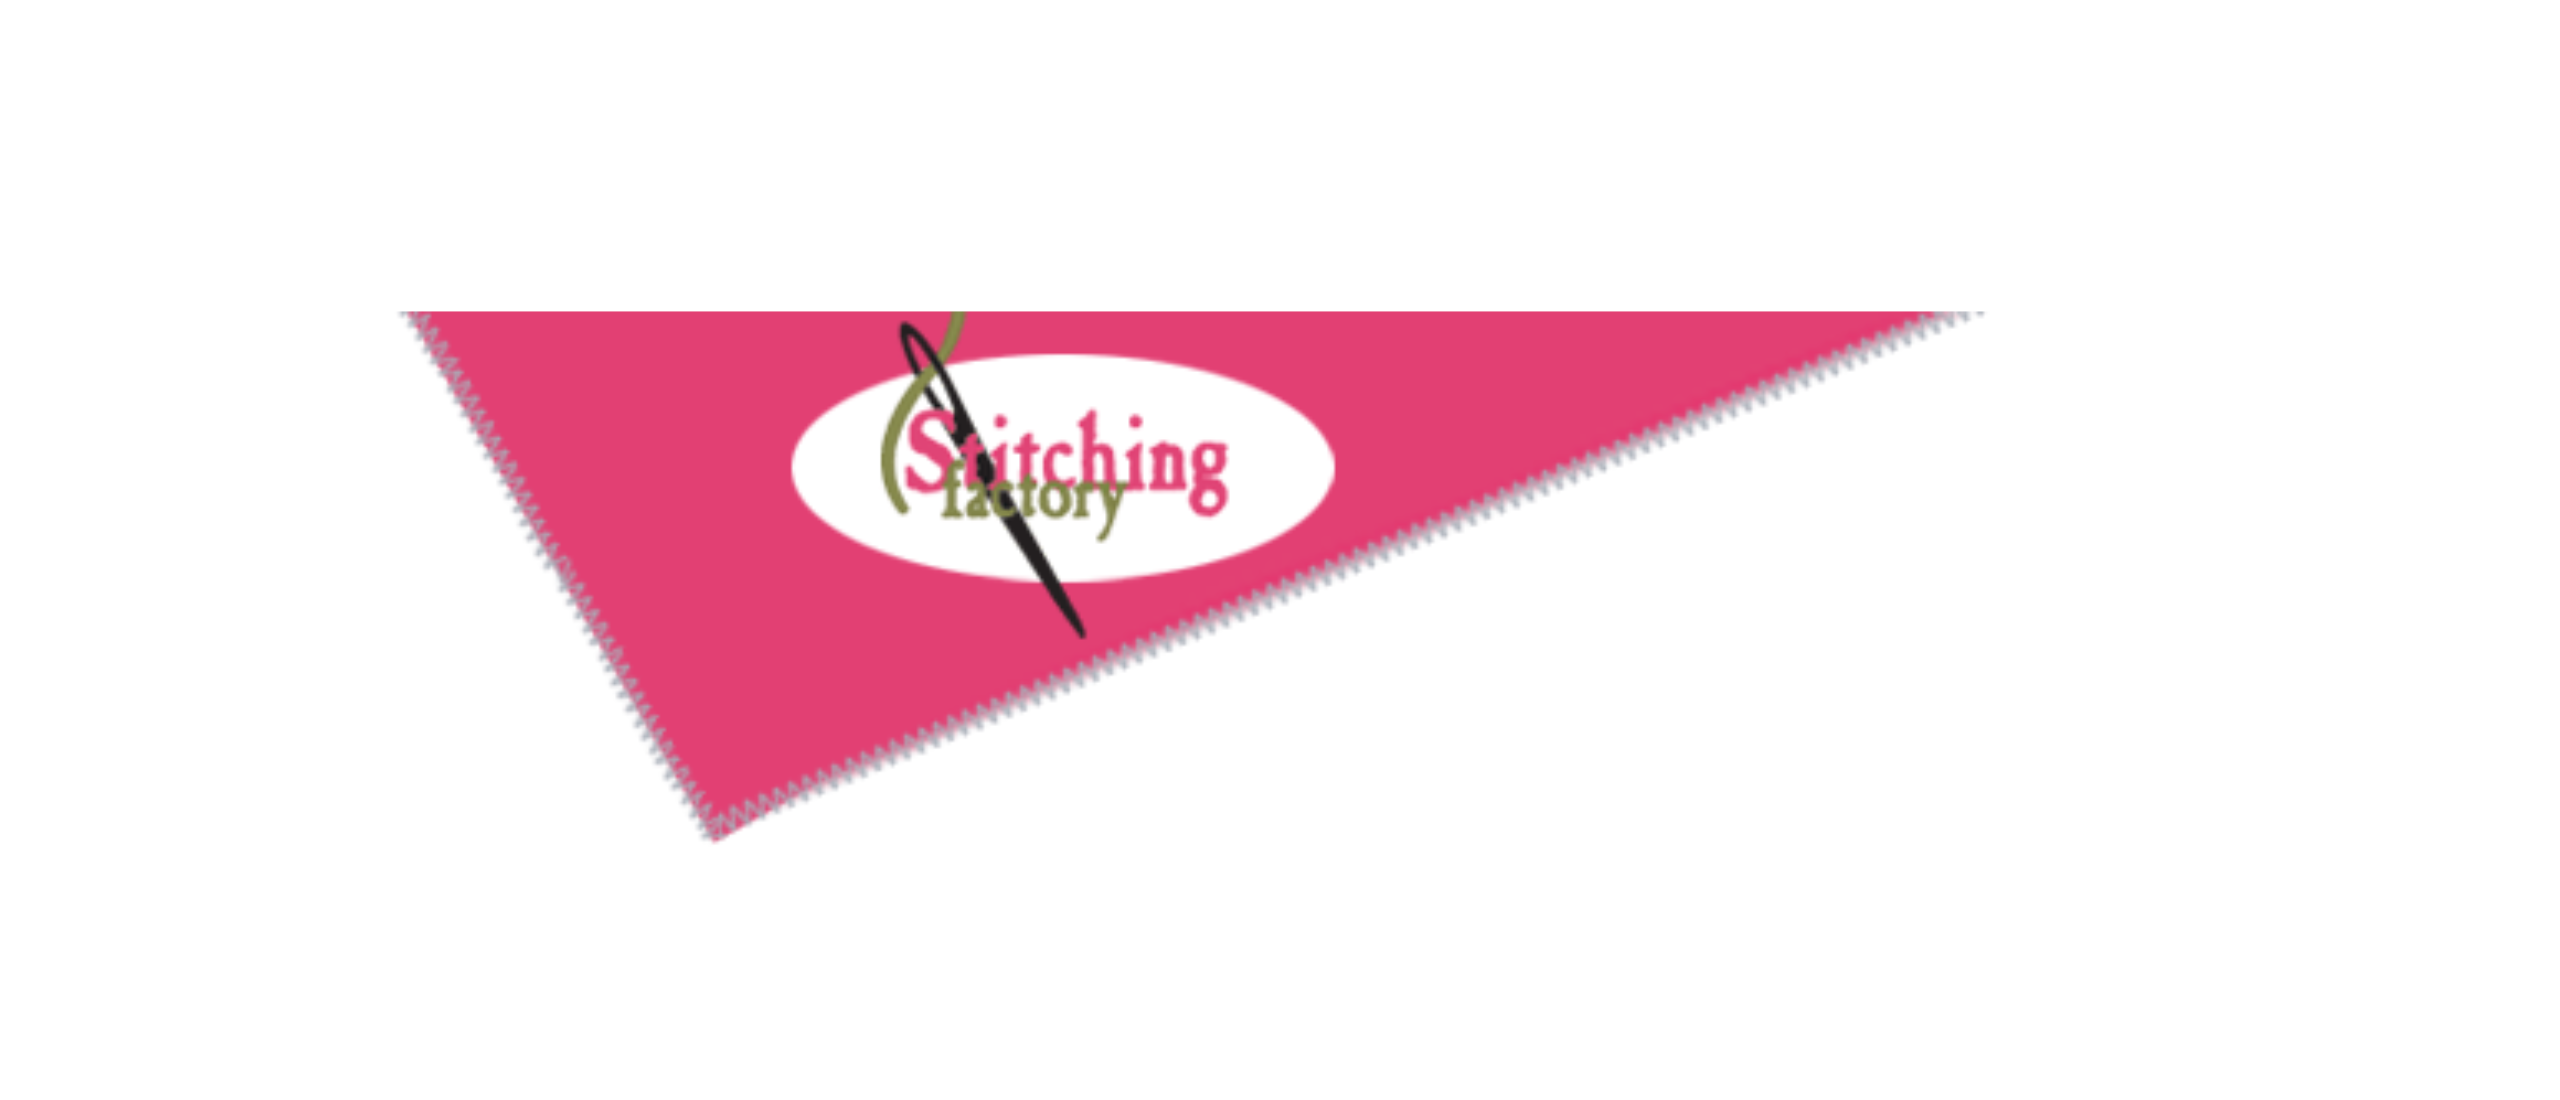 Stitching Factory: Het adres voor kwaliteitsvolle maatwerk en brei-hobbybenodigdheden in Enkhuizen